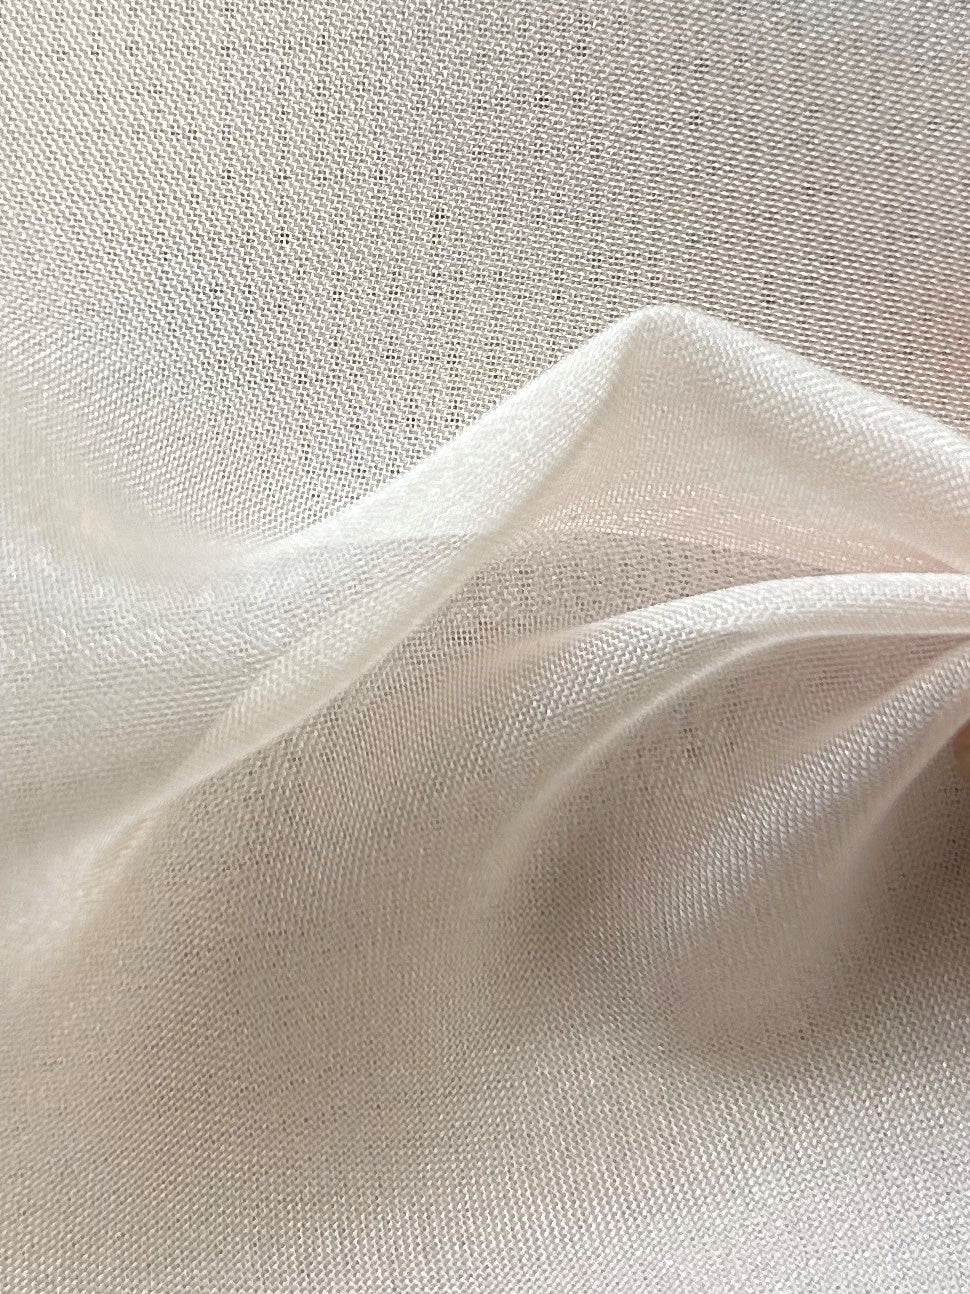 Errötendes Polyester-Chiffon – Ehrlichkeit